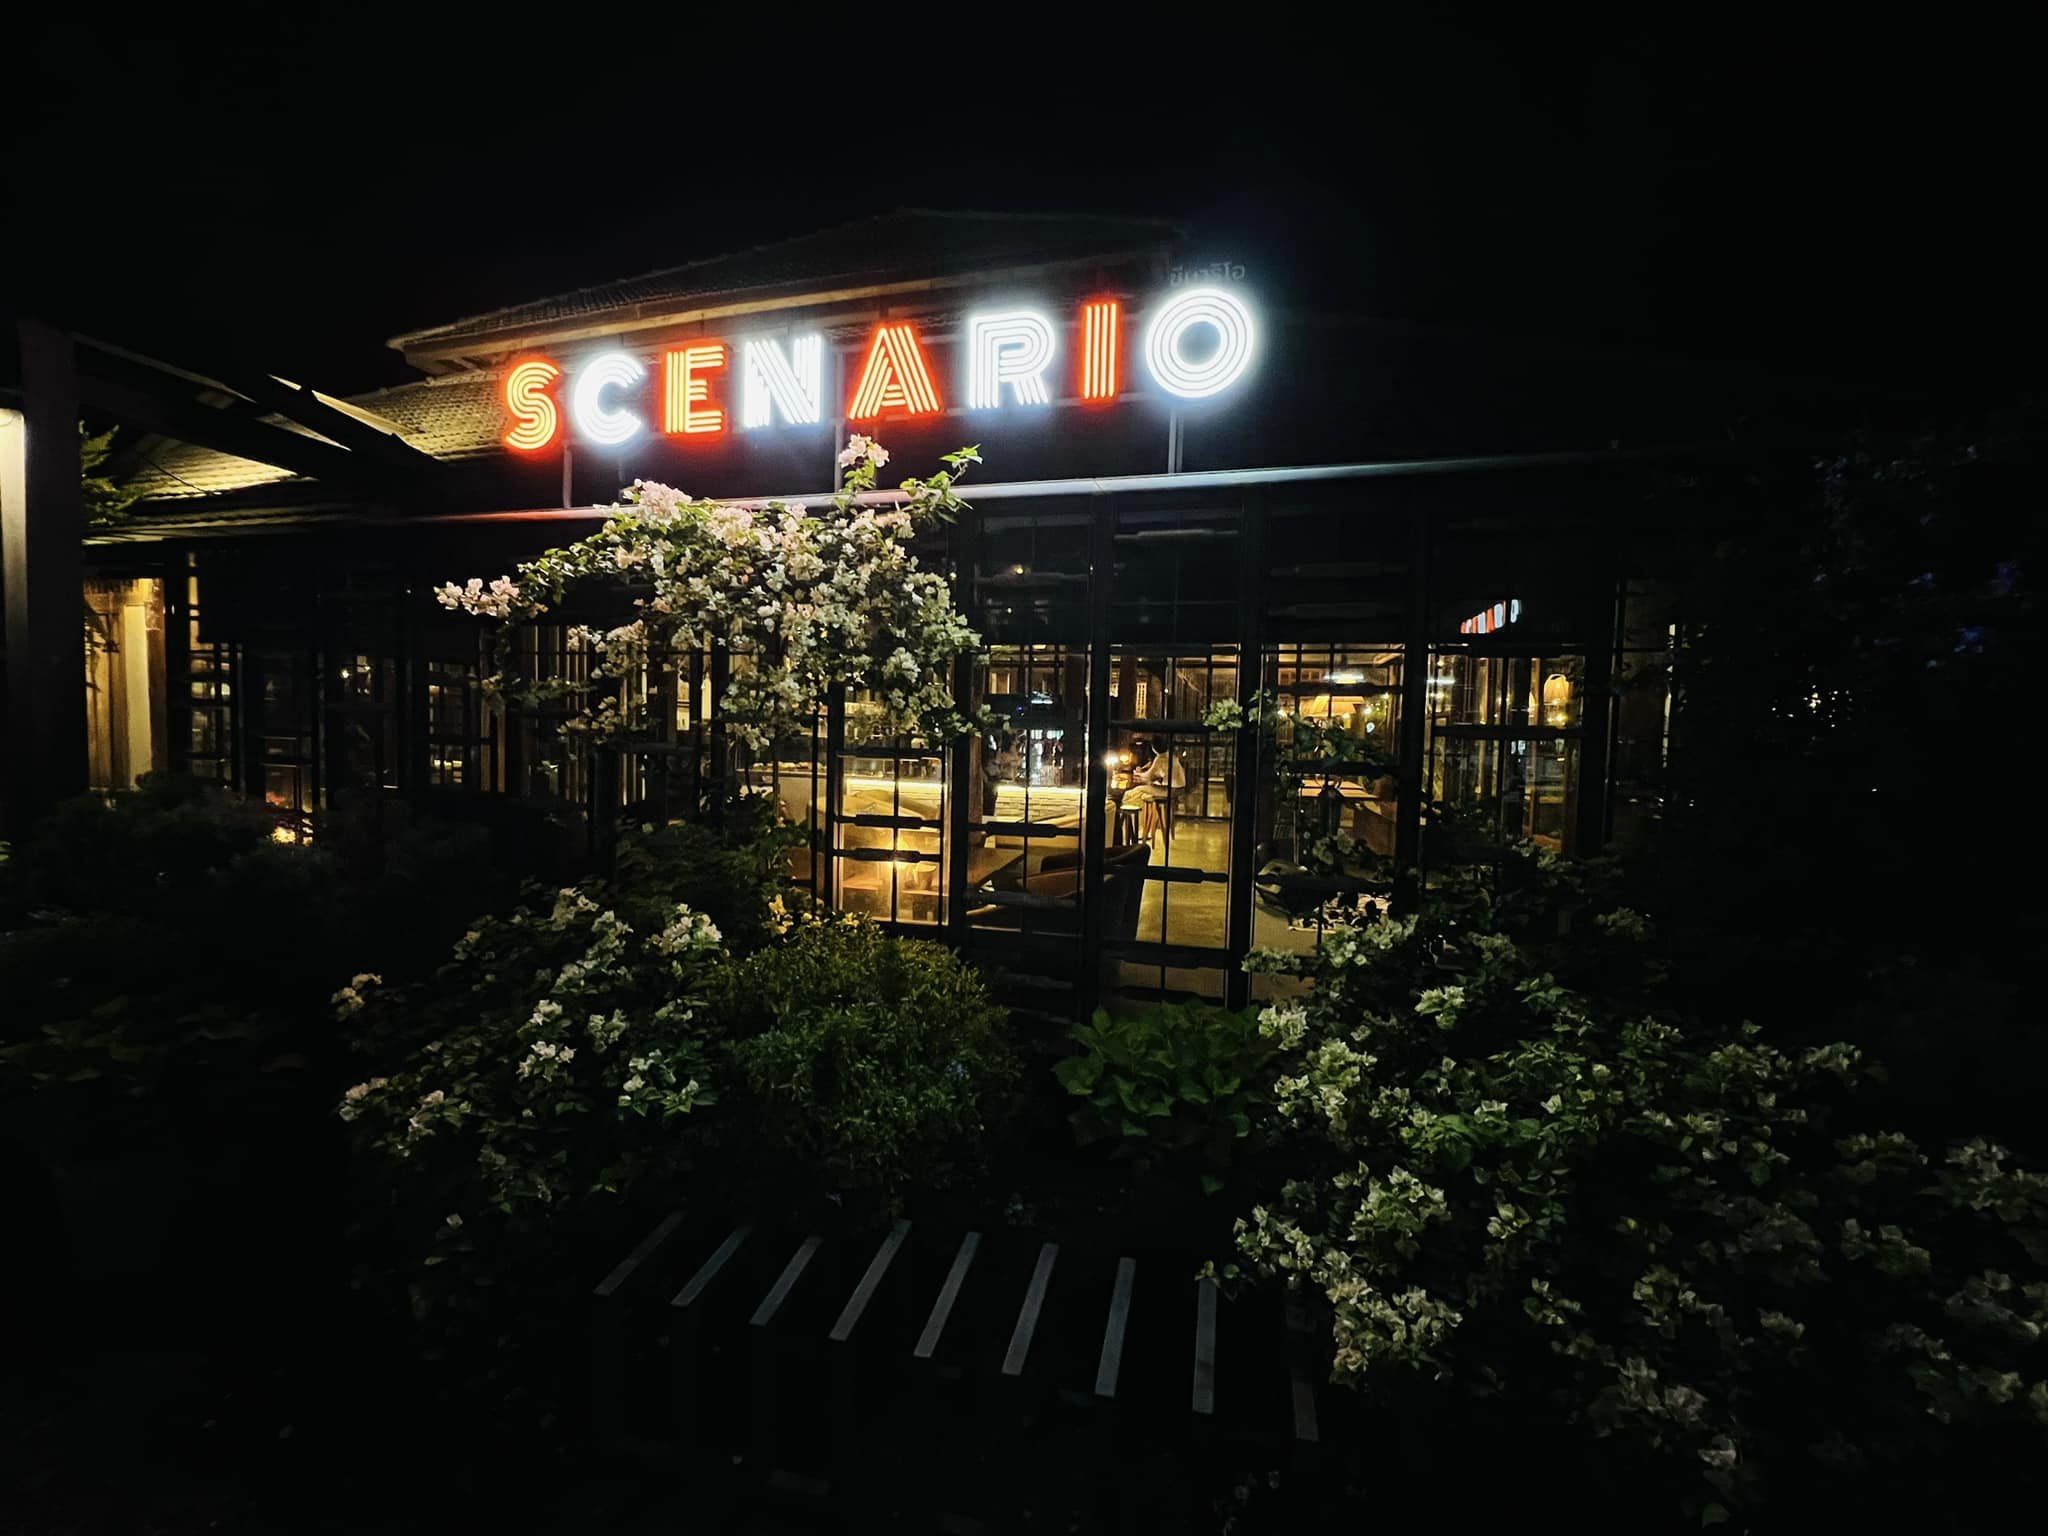 Scenario bar and bistro (Scenario bar and bistro) : เชียงราย (Chiang Rai)